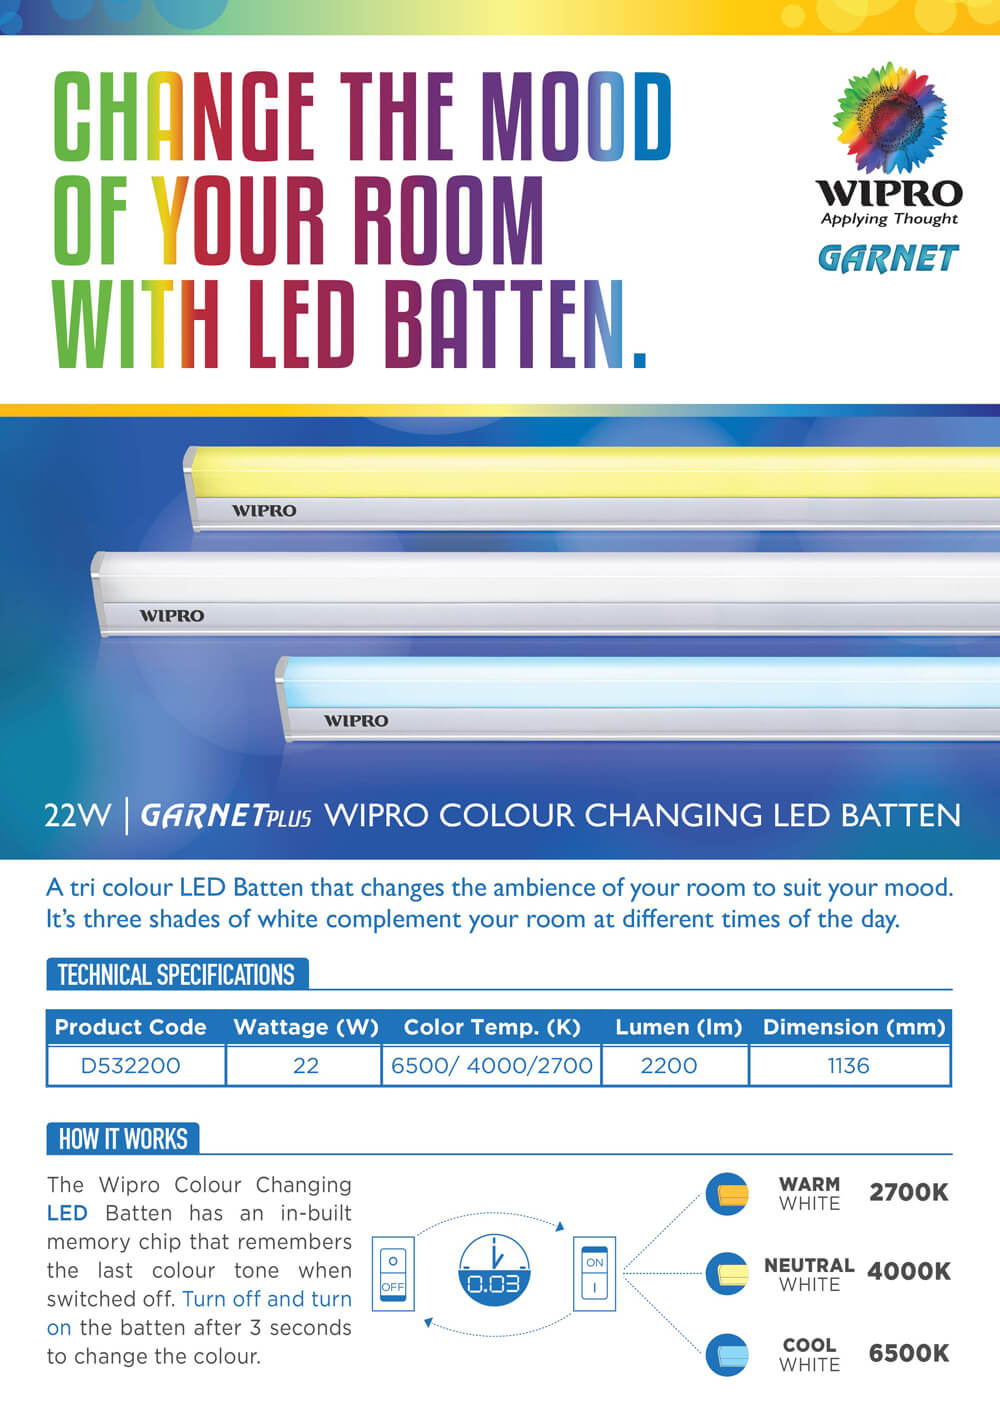 
Wipro Garnet Plus 22W 4ft LED Batten (3-in-1)